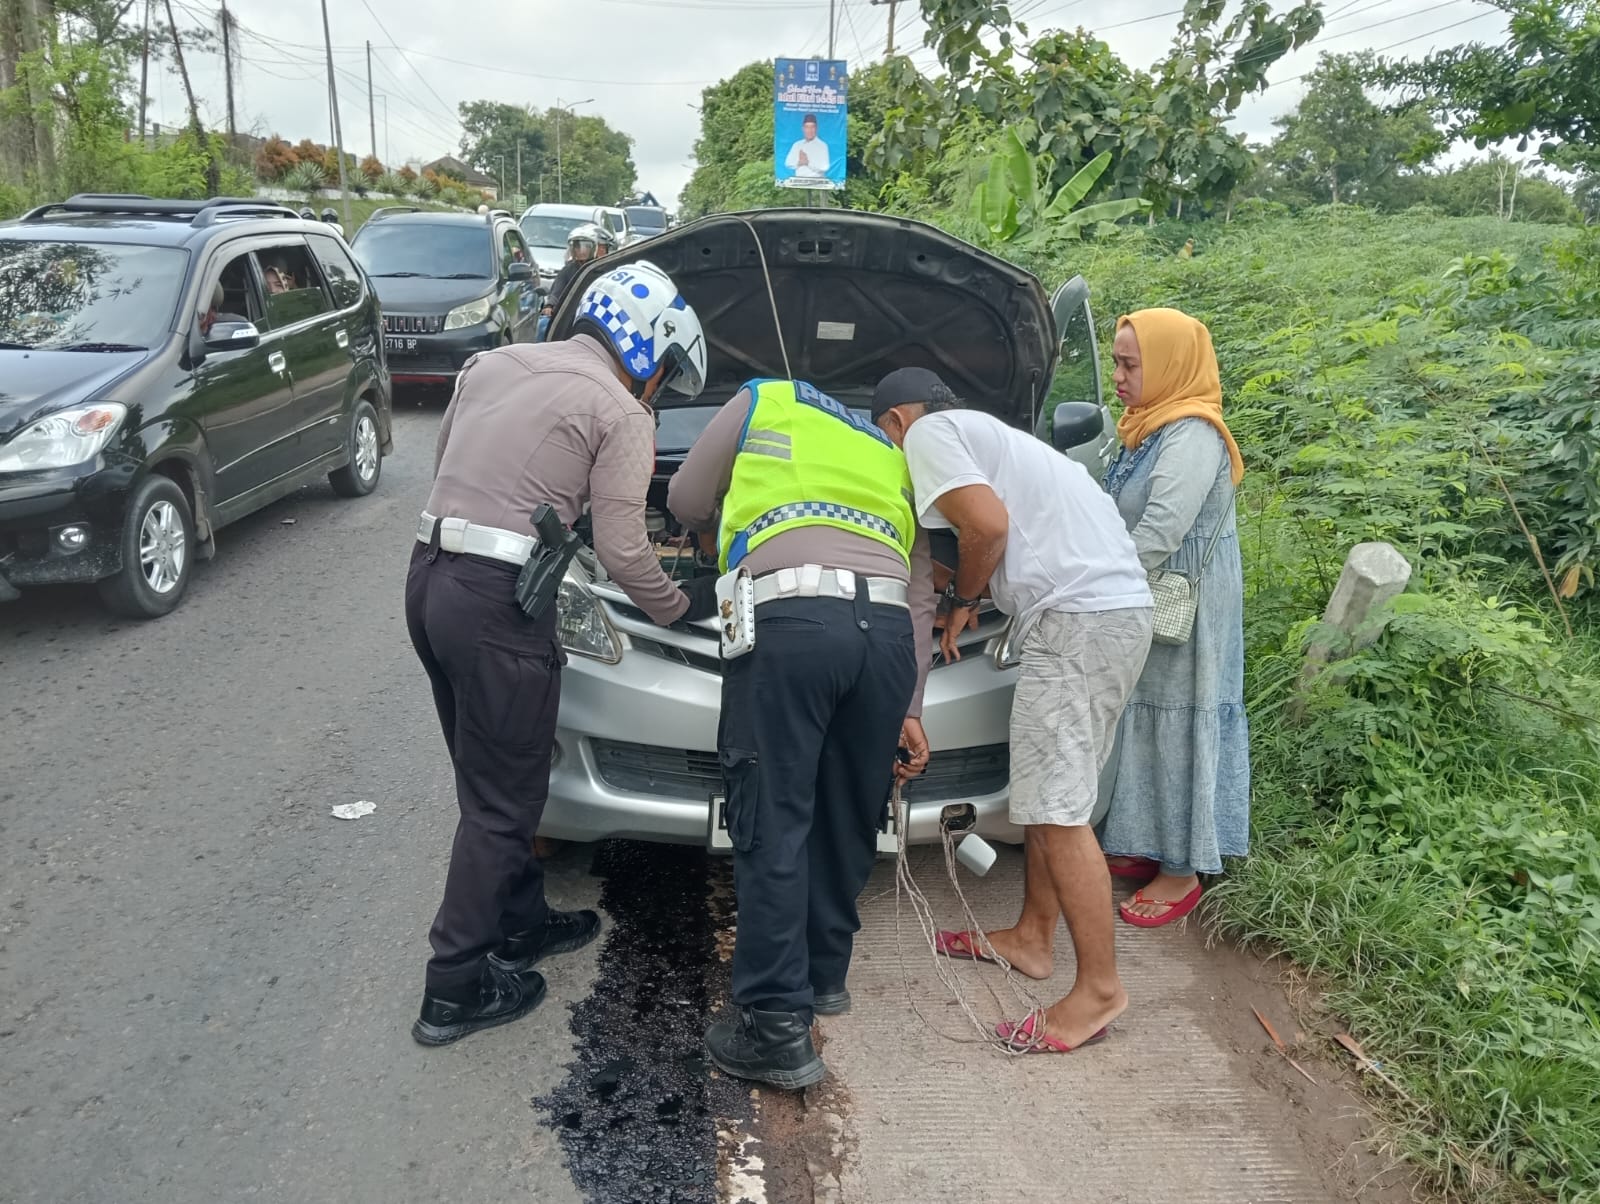 melaksanakan evakuasi kendaraan mogok ke tempat yang lebih aman guna menghindari terjadinya kemacetan kendaraan di seputih jaya kab. Lampung Tengah.